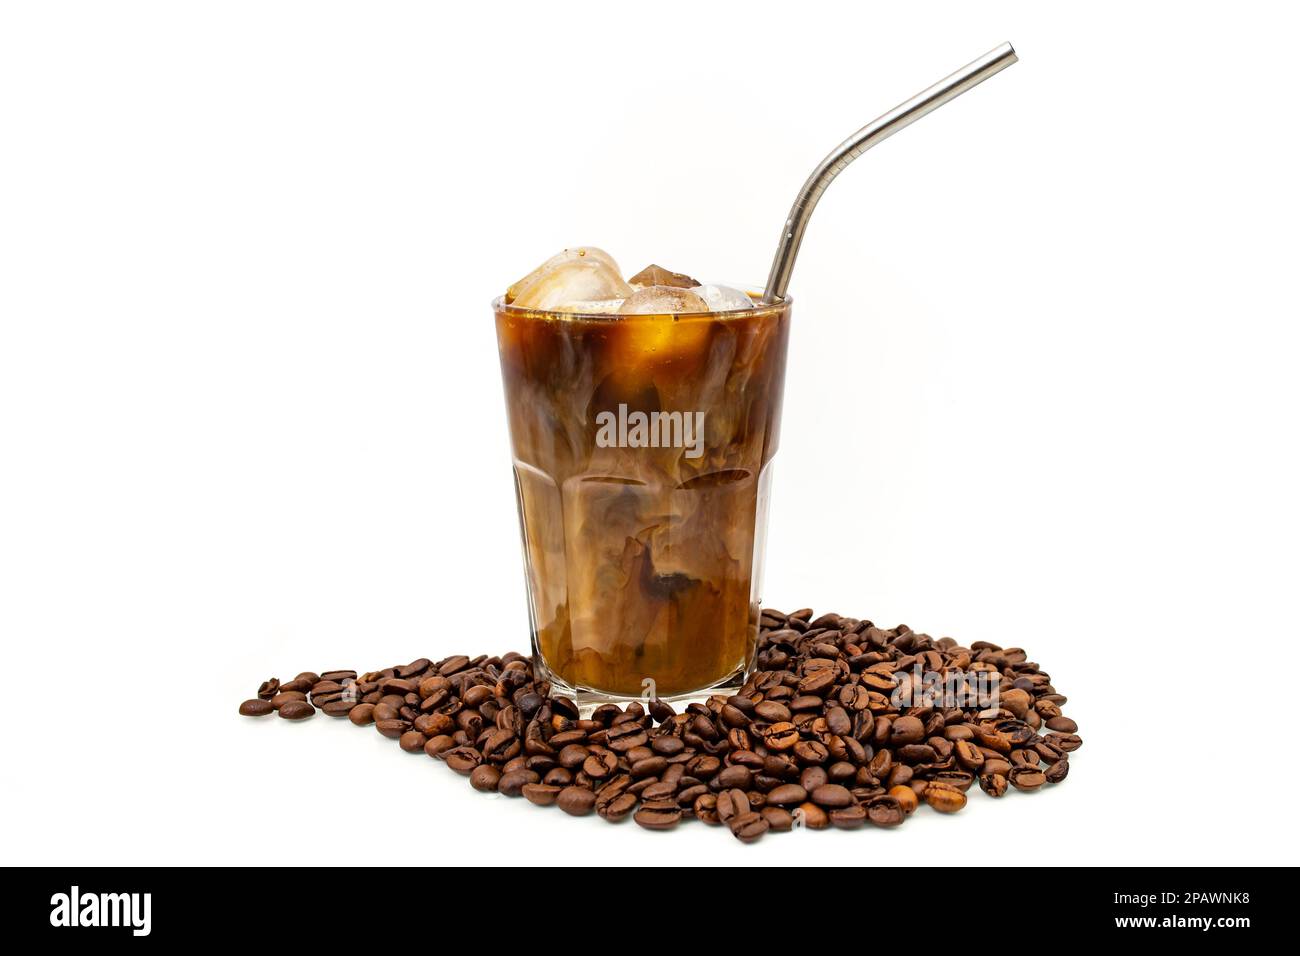 Eiskaffee und Milch in einem transparenten Glas mit einem Metall-Inox-Strohhalm und Kaffeebohnen, isoliert auf weißem Hintergrund Stockfoto